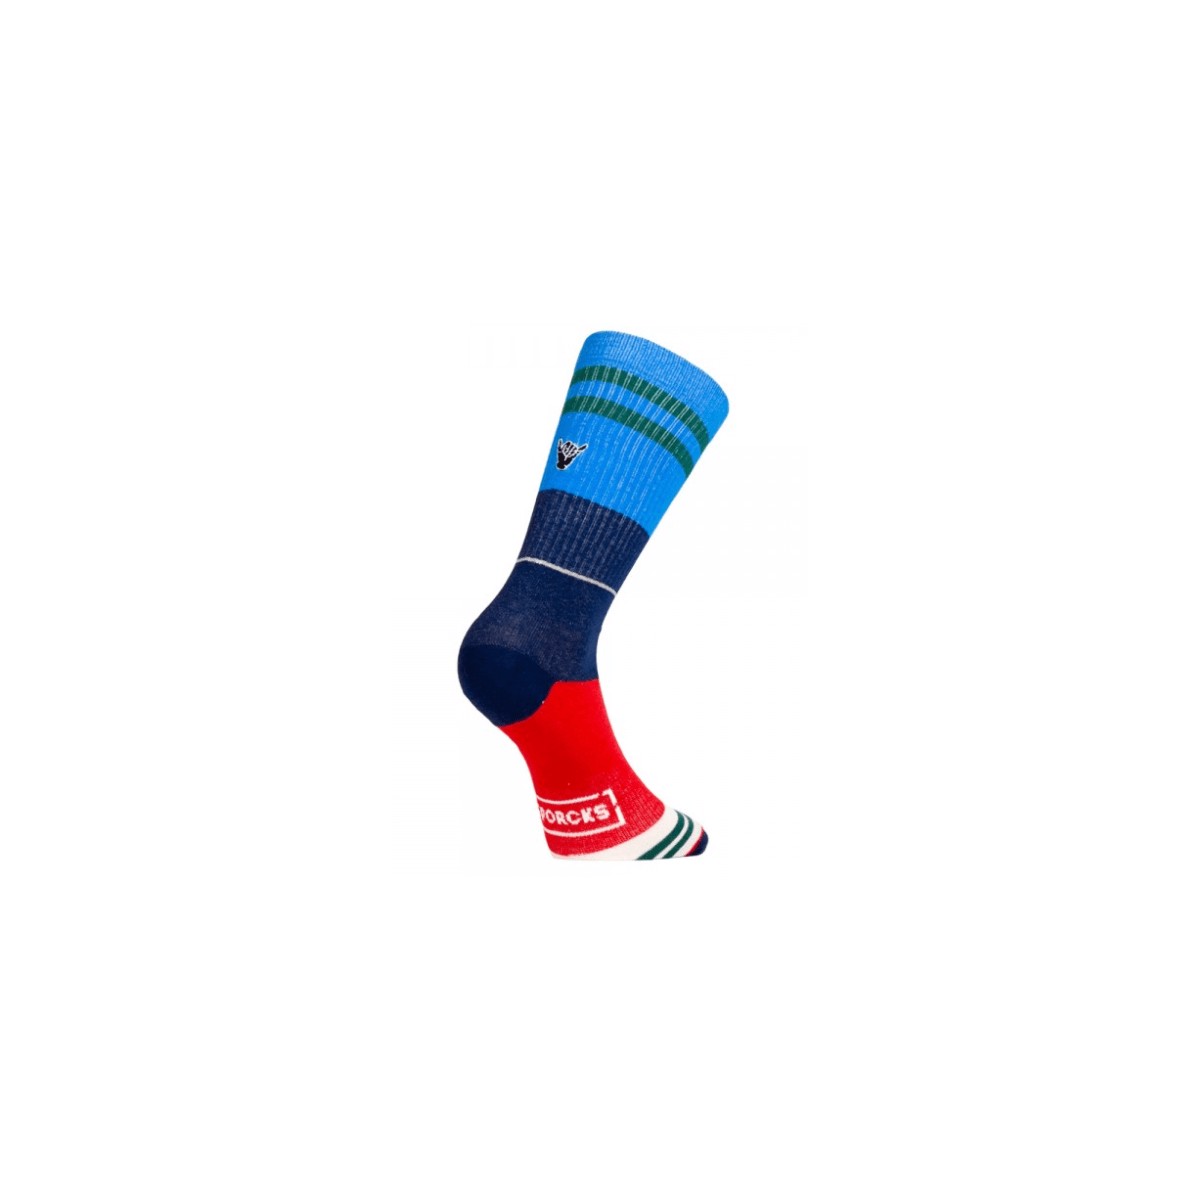 und Blau günstig Kaufen-Sporcks Casual Day Off Blaue Socken, Größe S. Sporcks Casual Day Off Blaue Socken, Größe S <![CDATA[Sporcks Casual Day Off Blaue Socken Lässige Linie für den Alltag. Dünn, bequem und atmungsaktiv machen sie die perfekte Socke für a